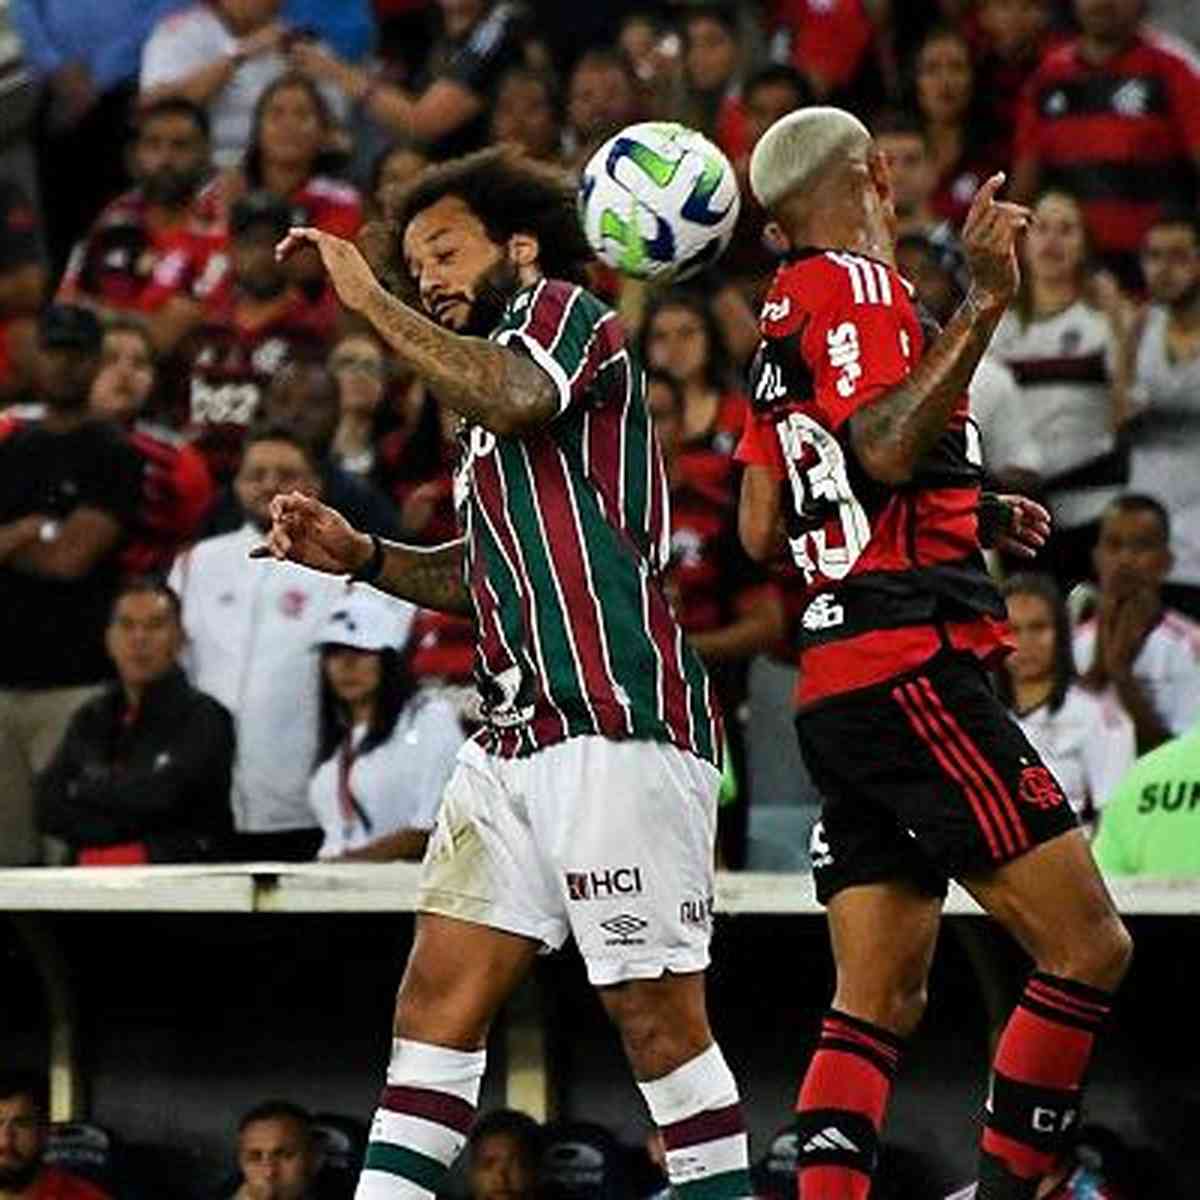 Copa do Brasil: Flamengo domina, cria chances, mas Fluminense segura empate  com um a menos - Lance!